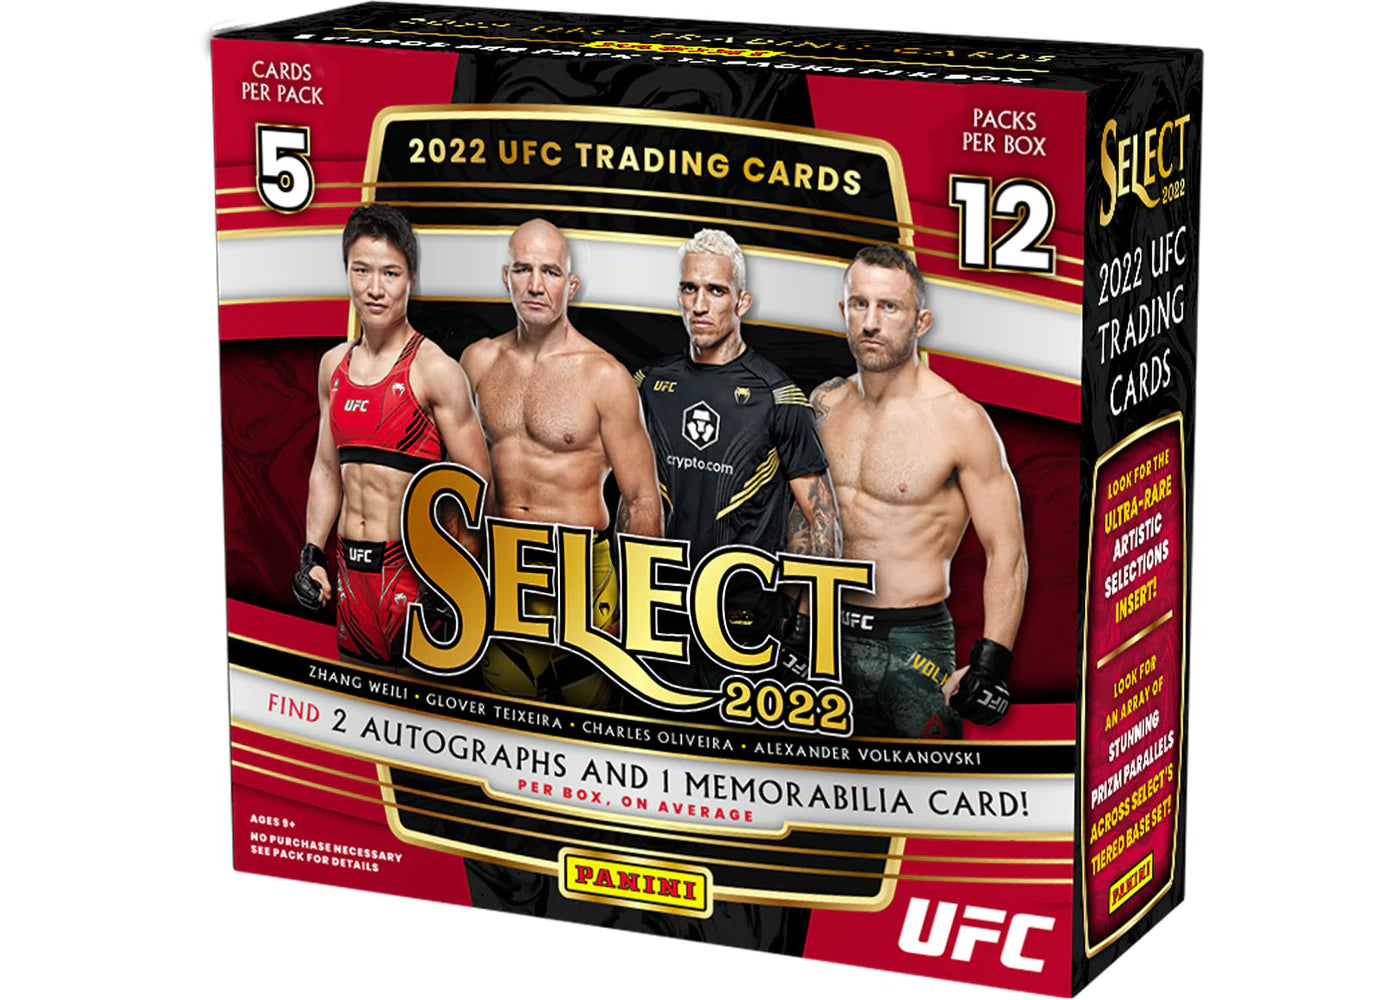 2023 UFC - PANINI SELECT - HOBBY BOX